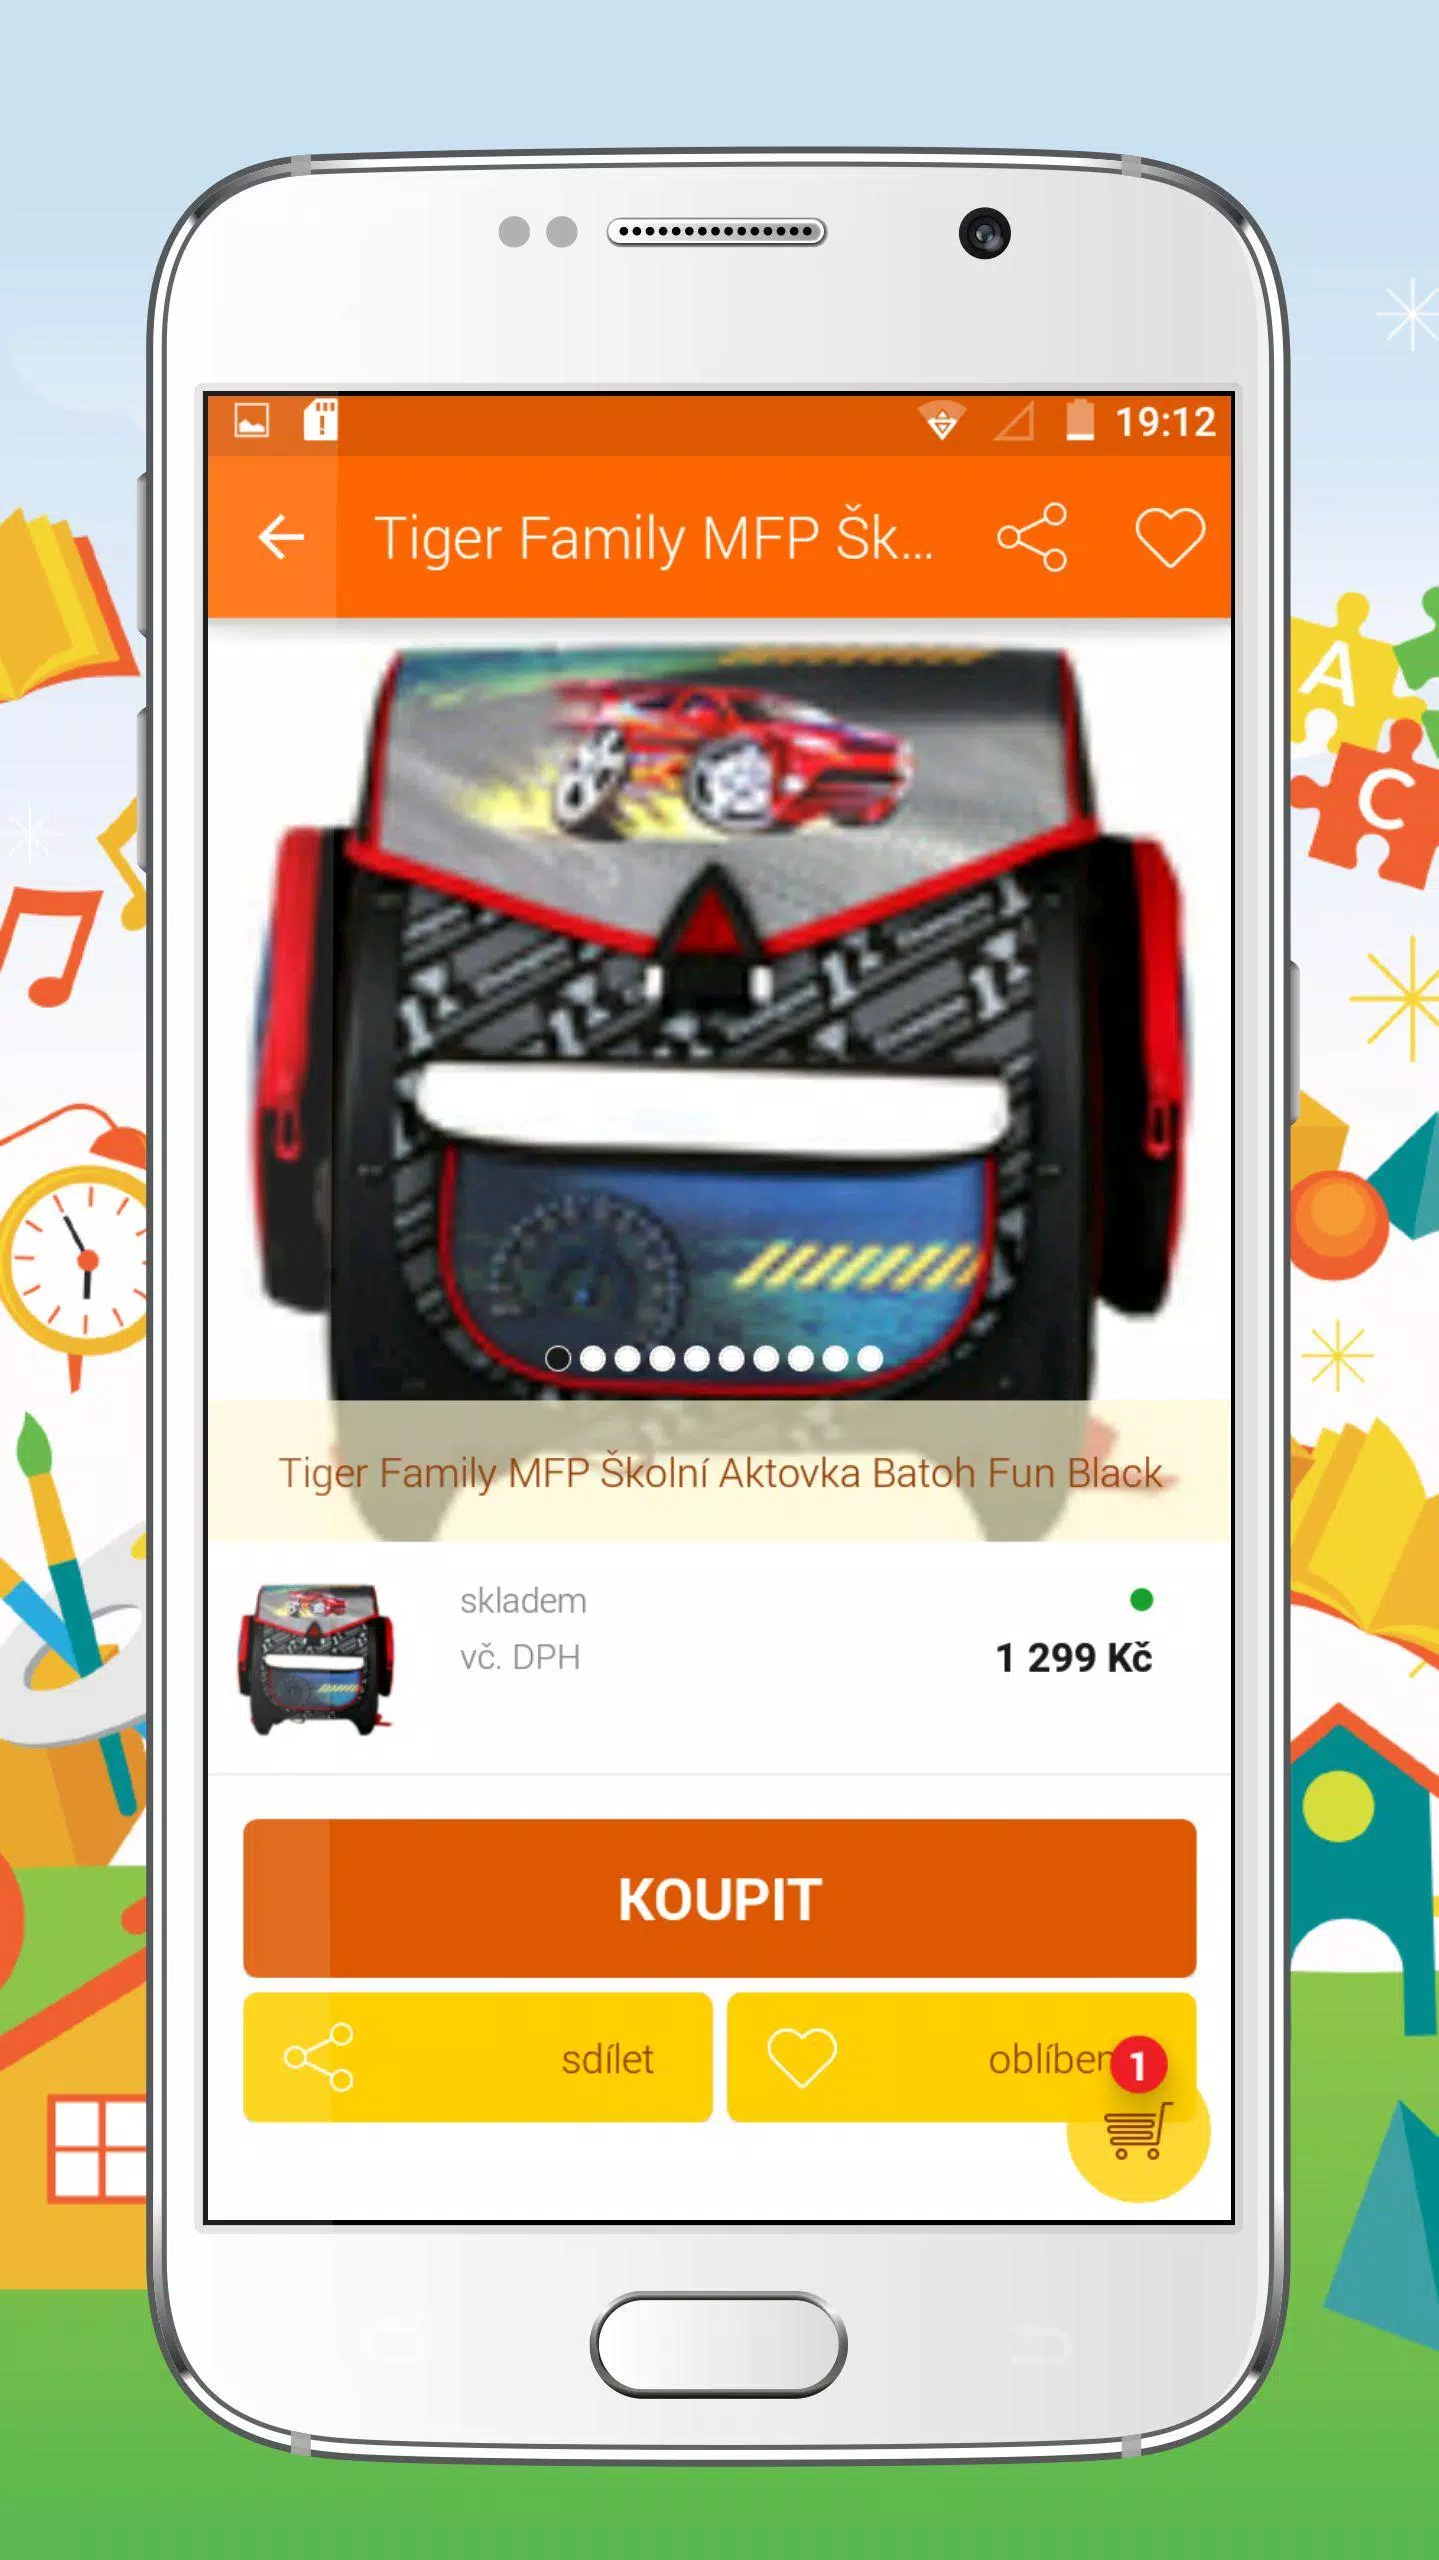 Hračky Hopík for Android - APK Download